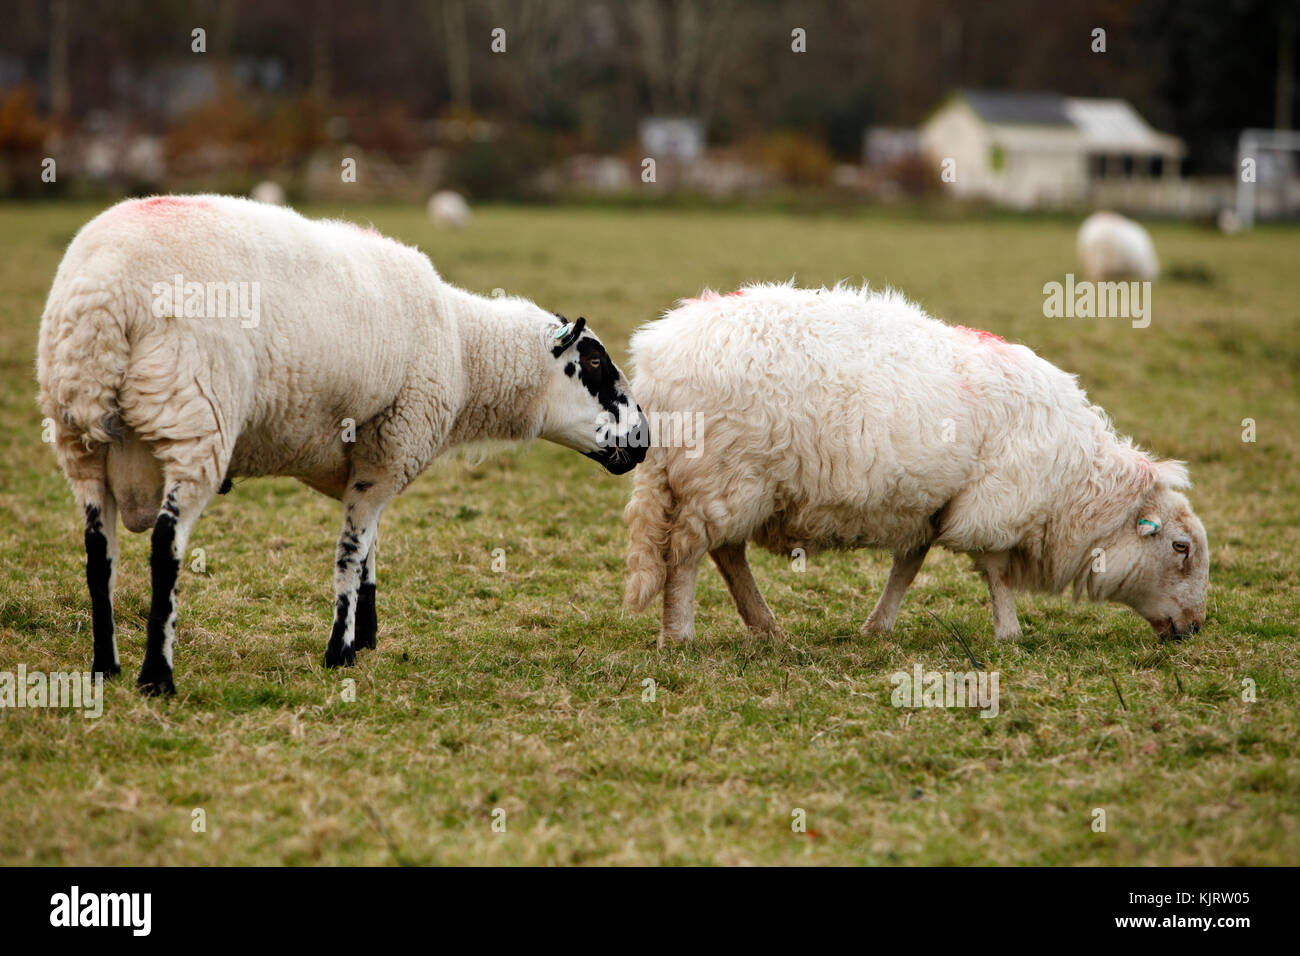 Kerry Hill Ram e Welsh Mountain pecora, Gallese varietà di pecora. Pecore bianche con marcature nere. Foto Stock